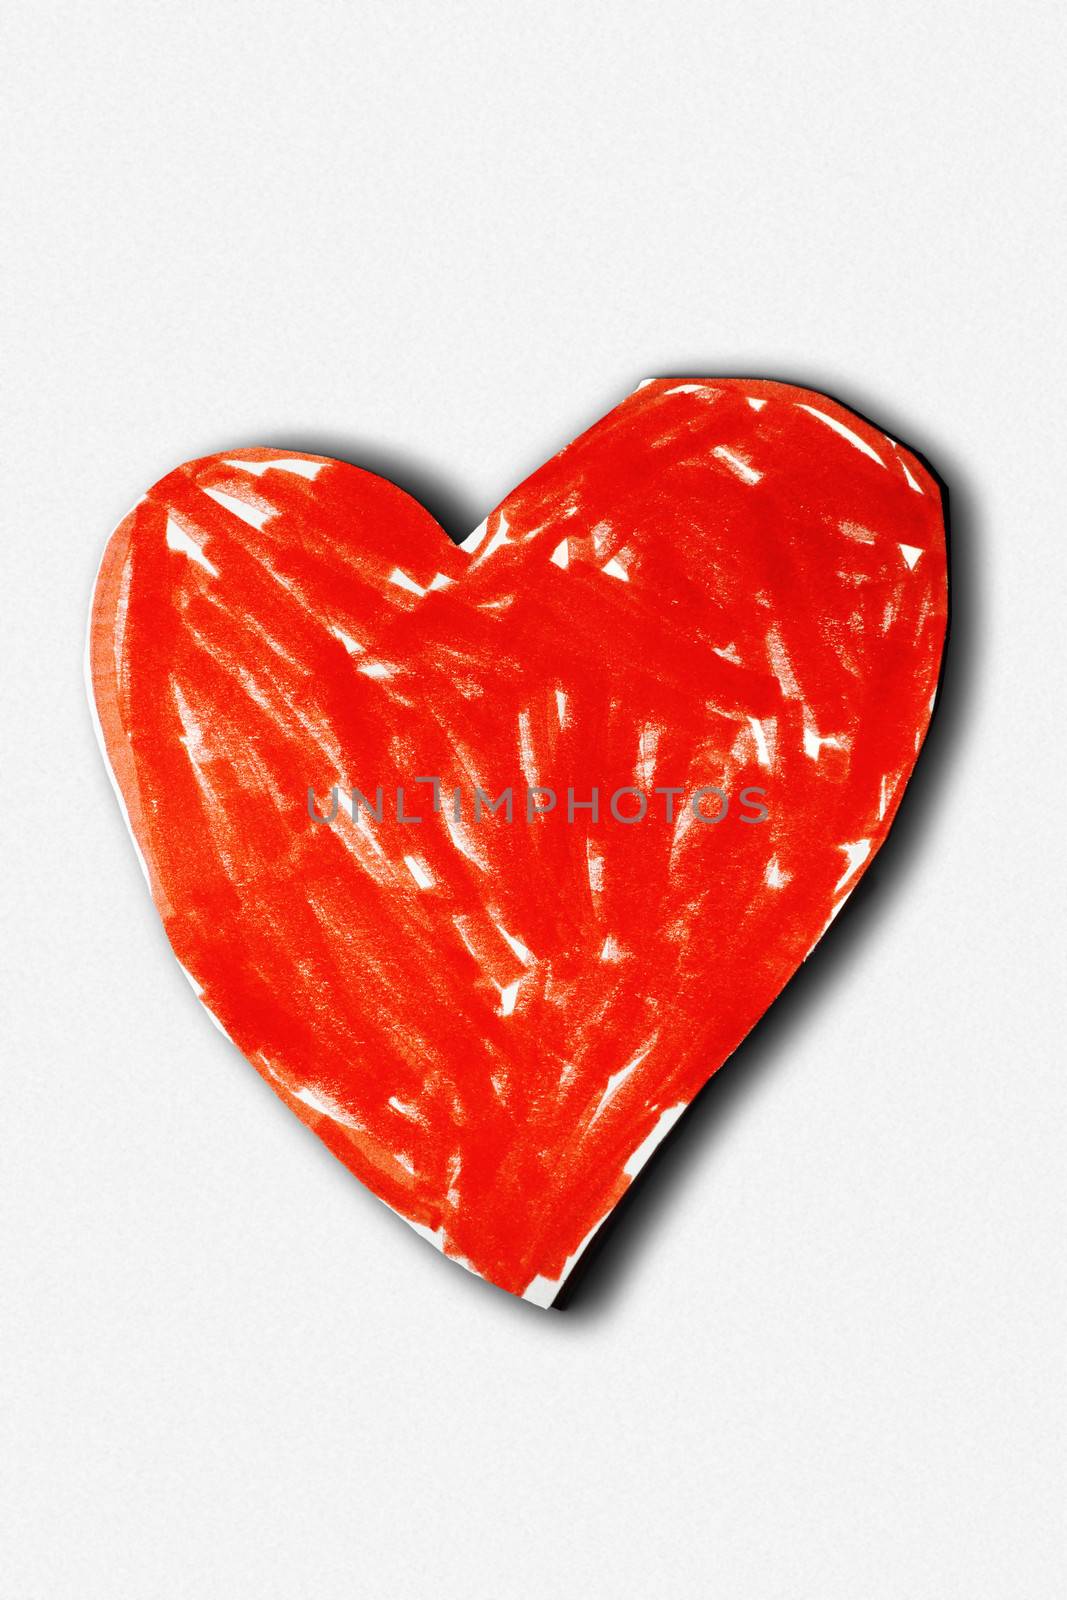 Child's valentine card by Mirage3